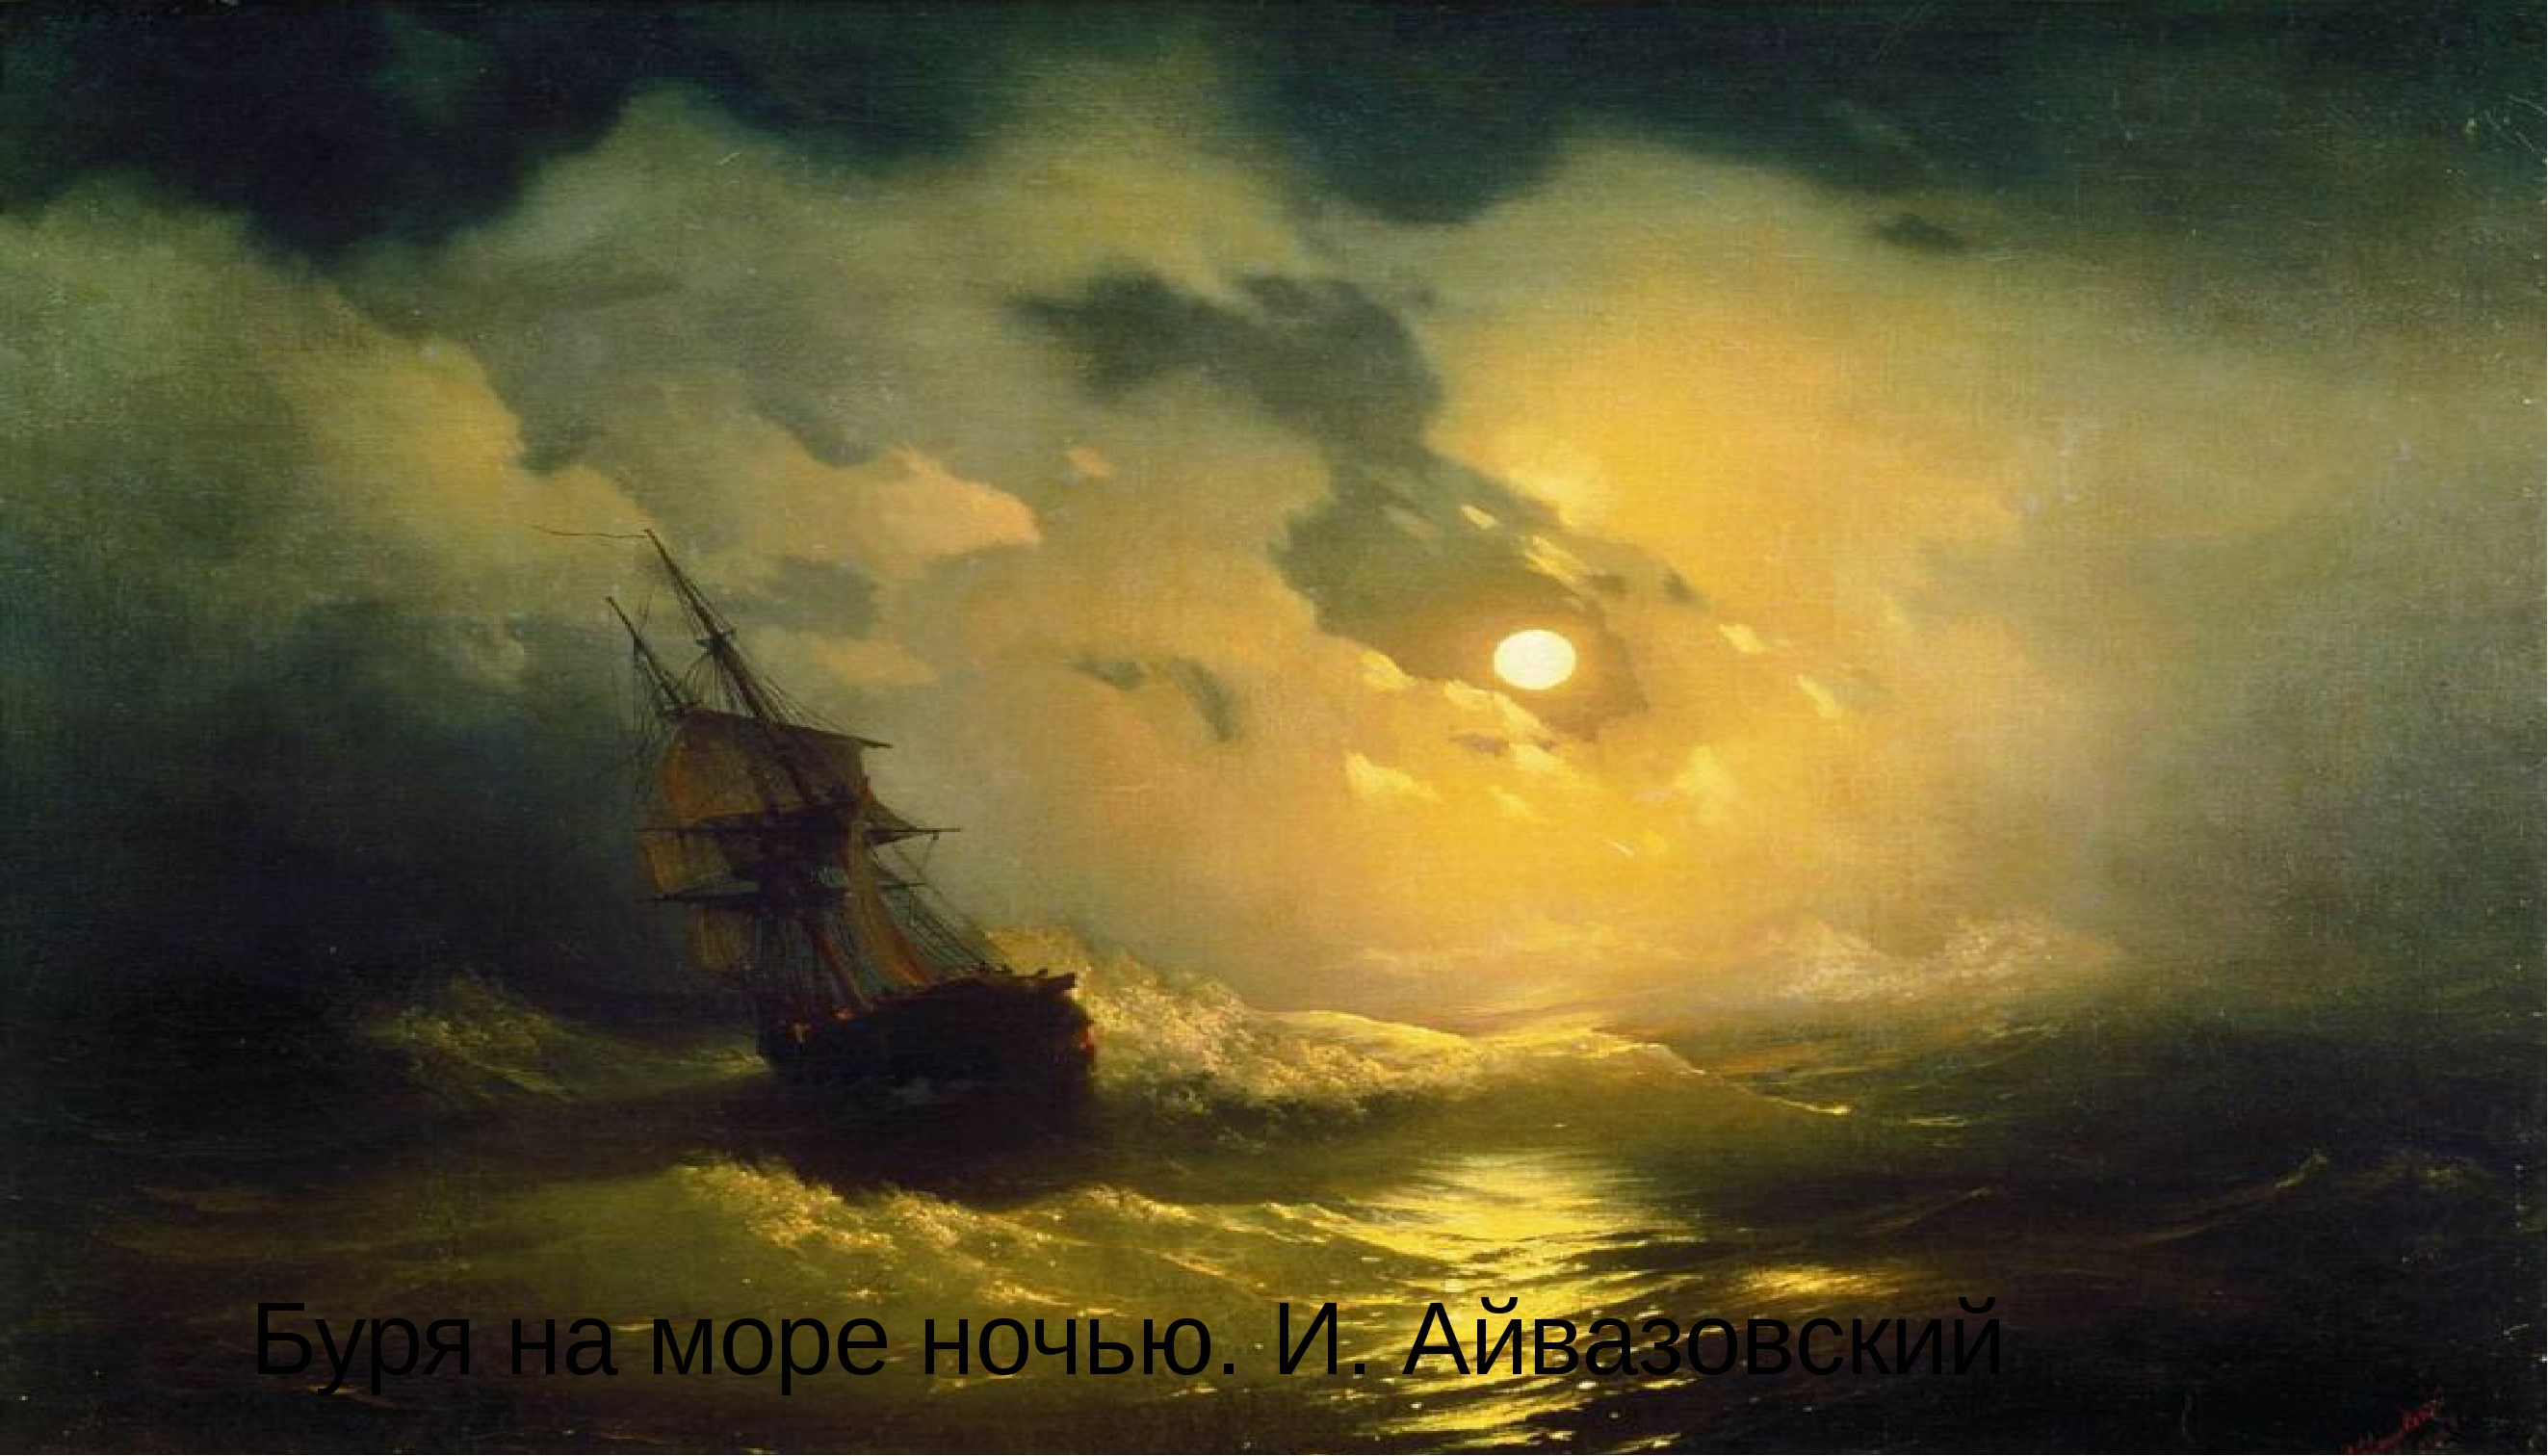 Жизнь и творчество ик айвазовского. Айвазовский буря на море ночью 1849.